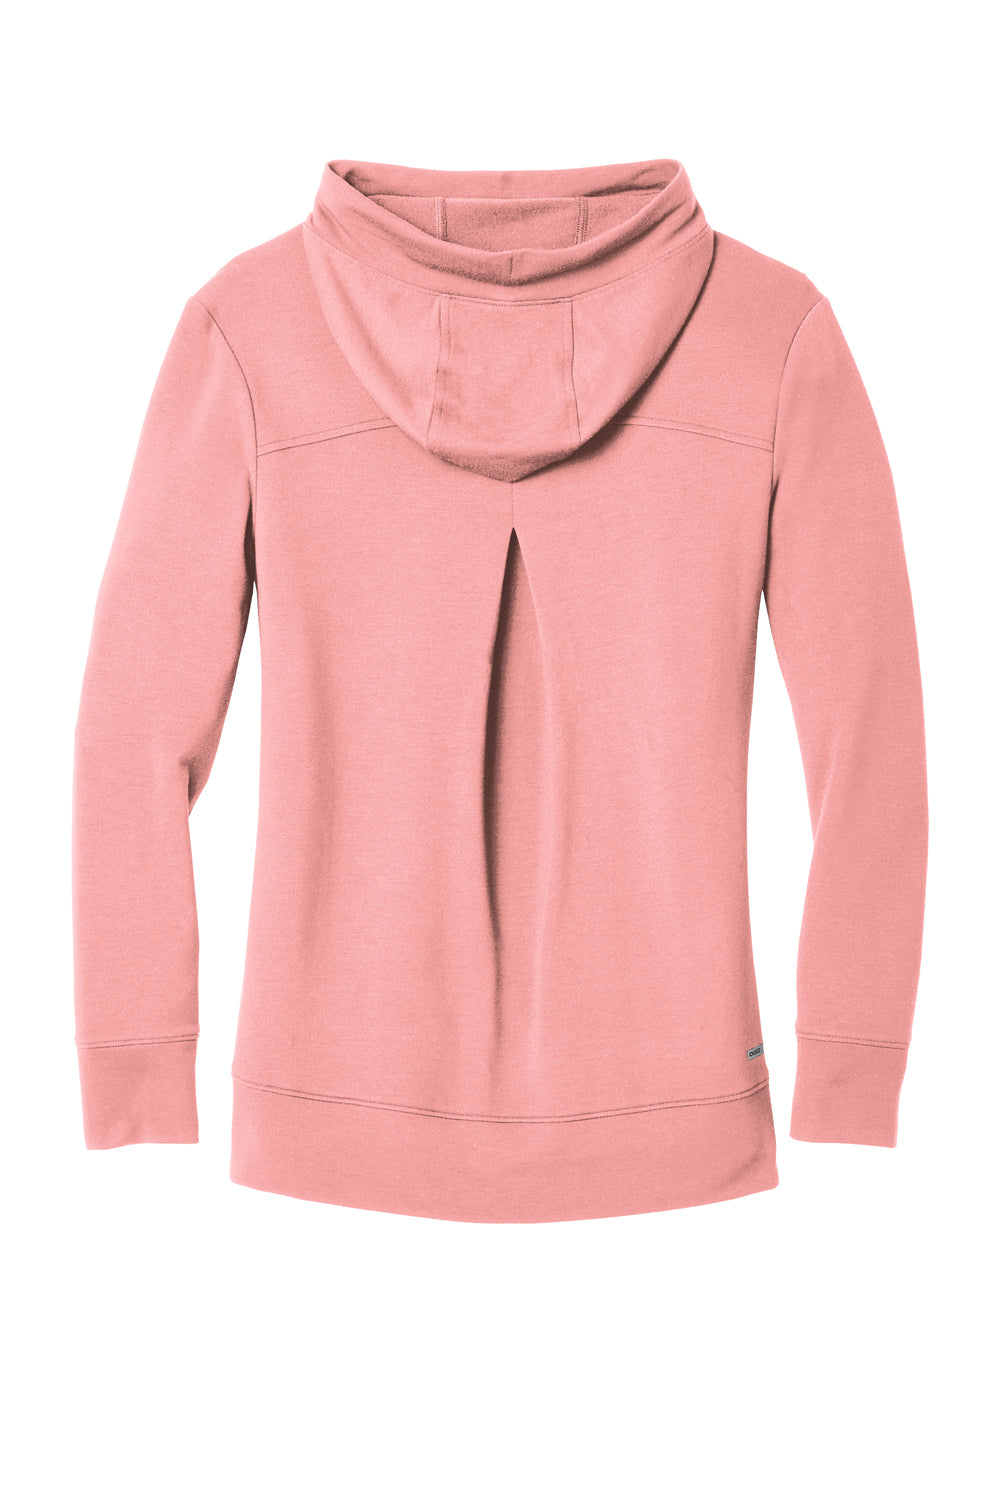 Ogio Womens Luuma Fleece Hooded Sweatshirt Hoodie Swift Pink Flat Back